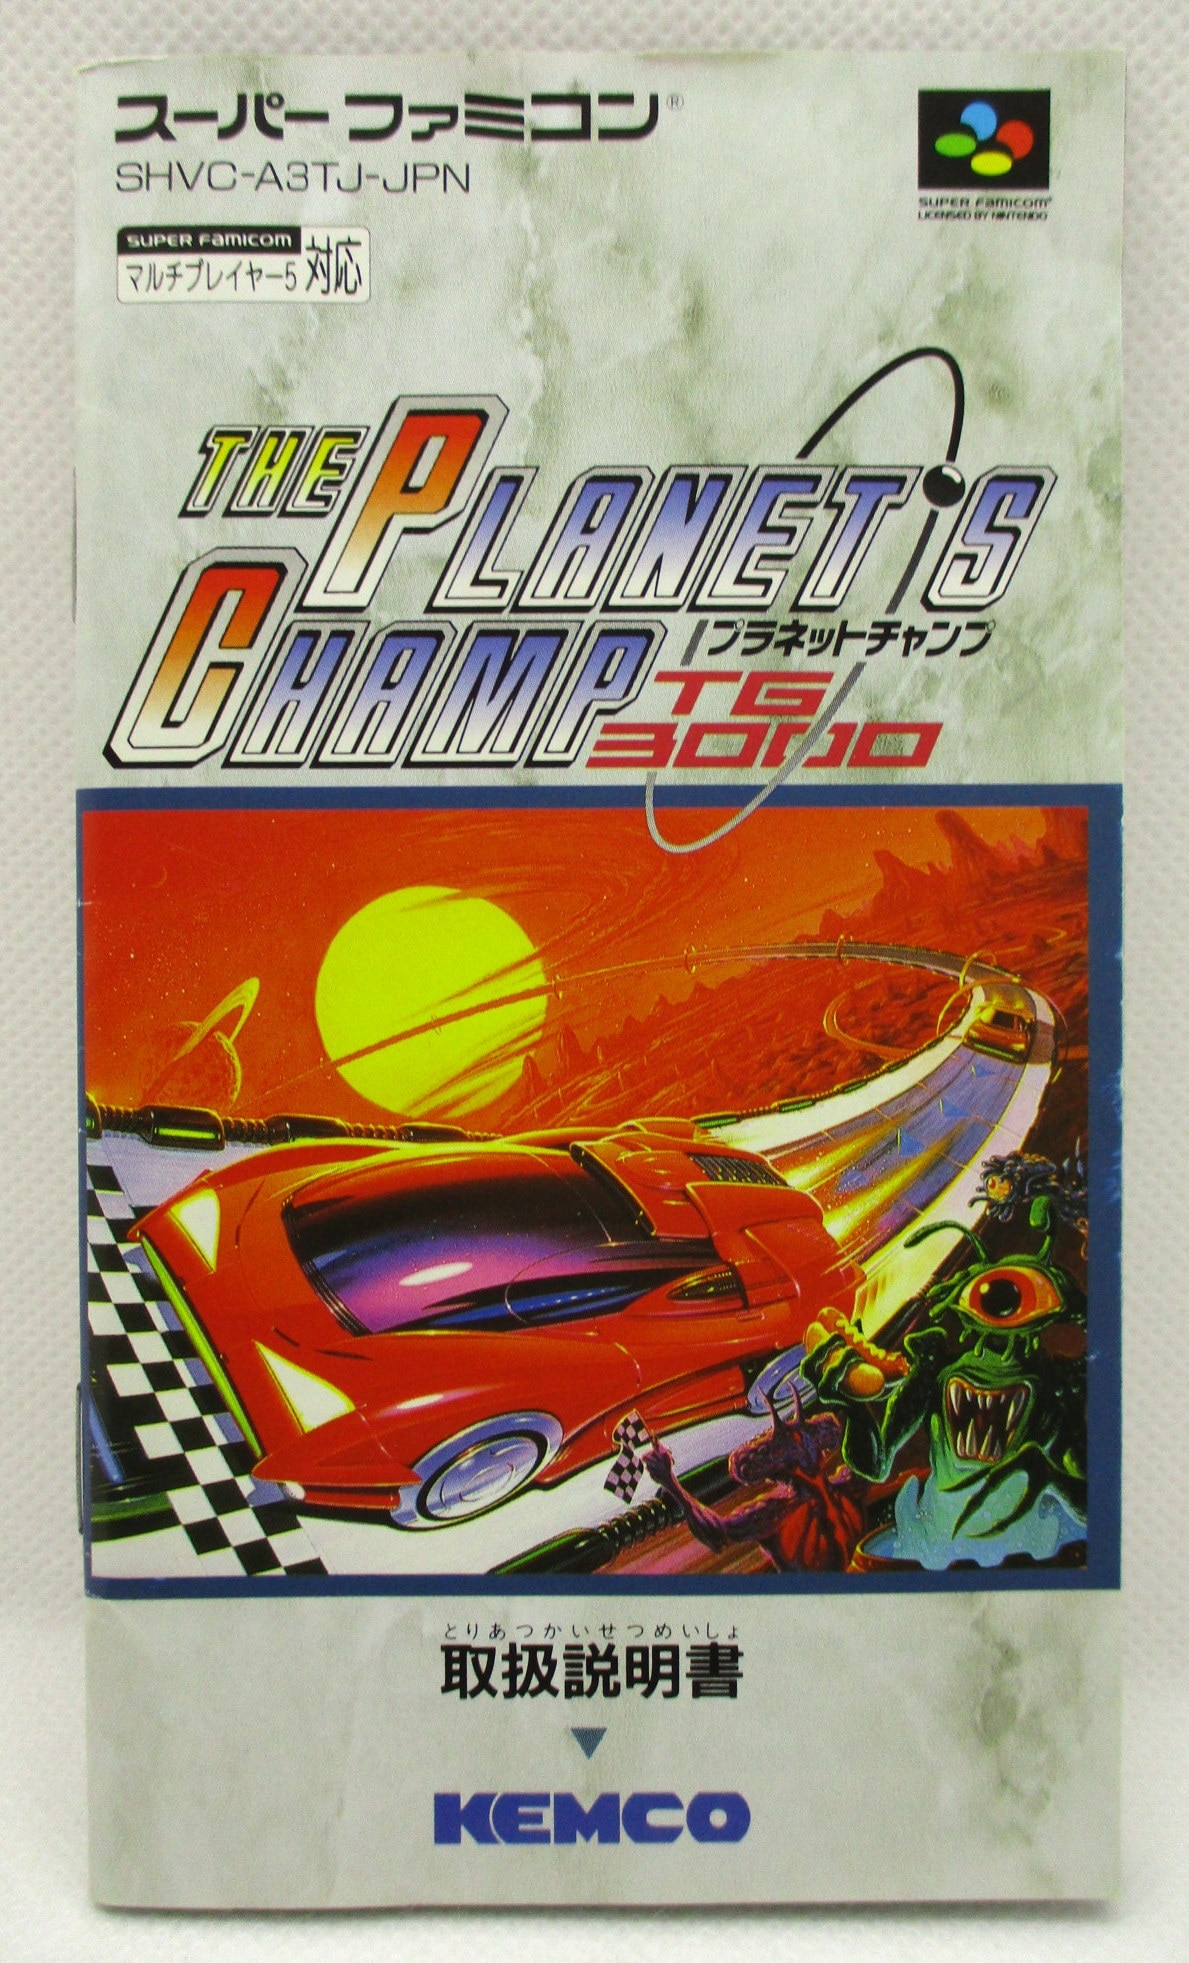 スーパーファミコン『プラネットチャンプ TG3000』-